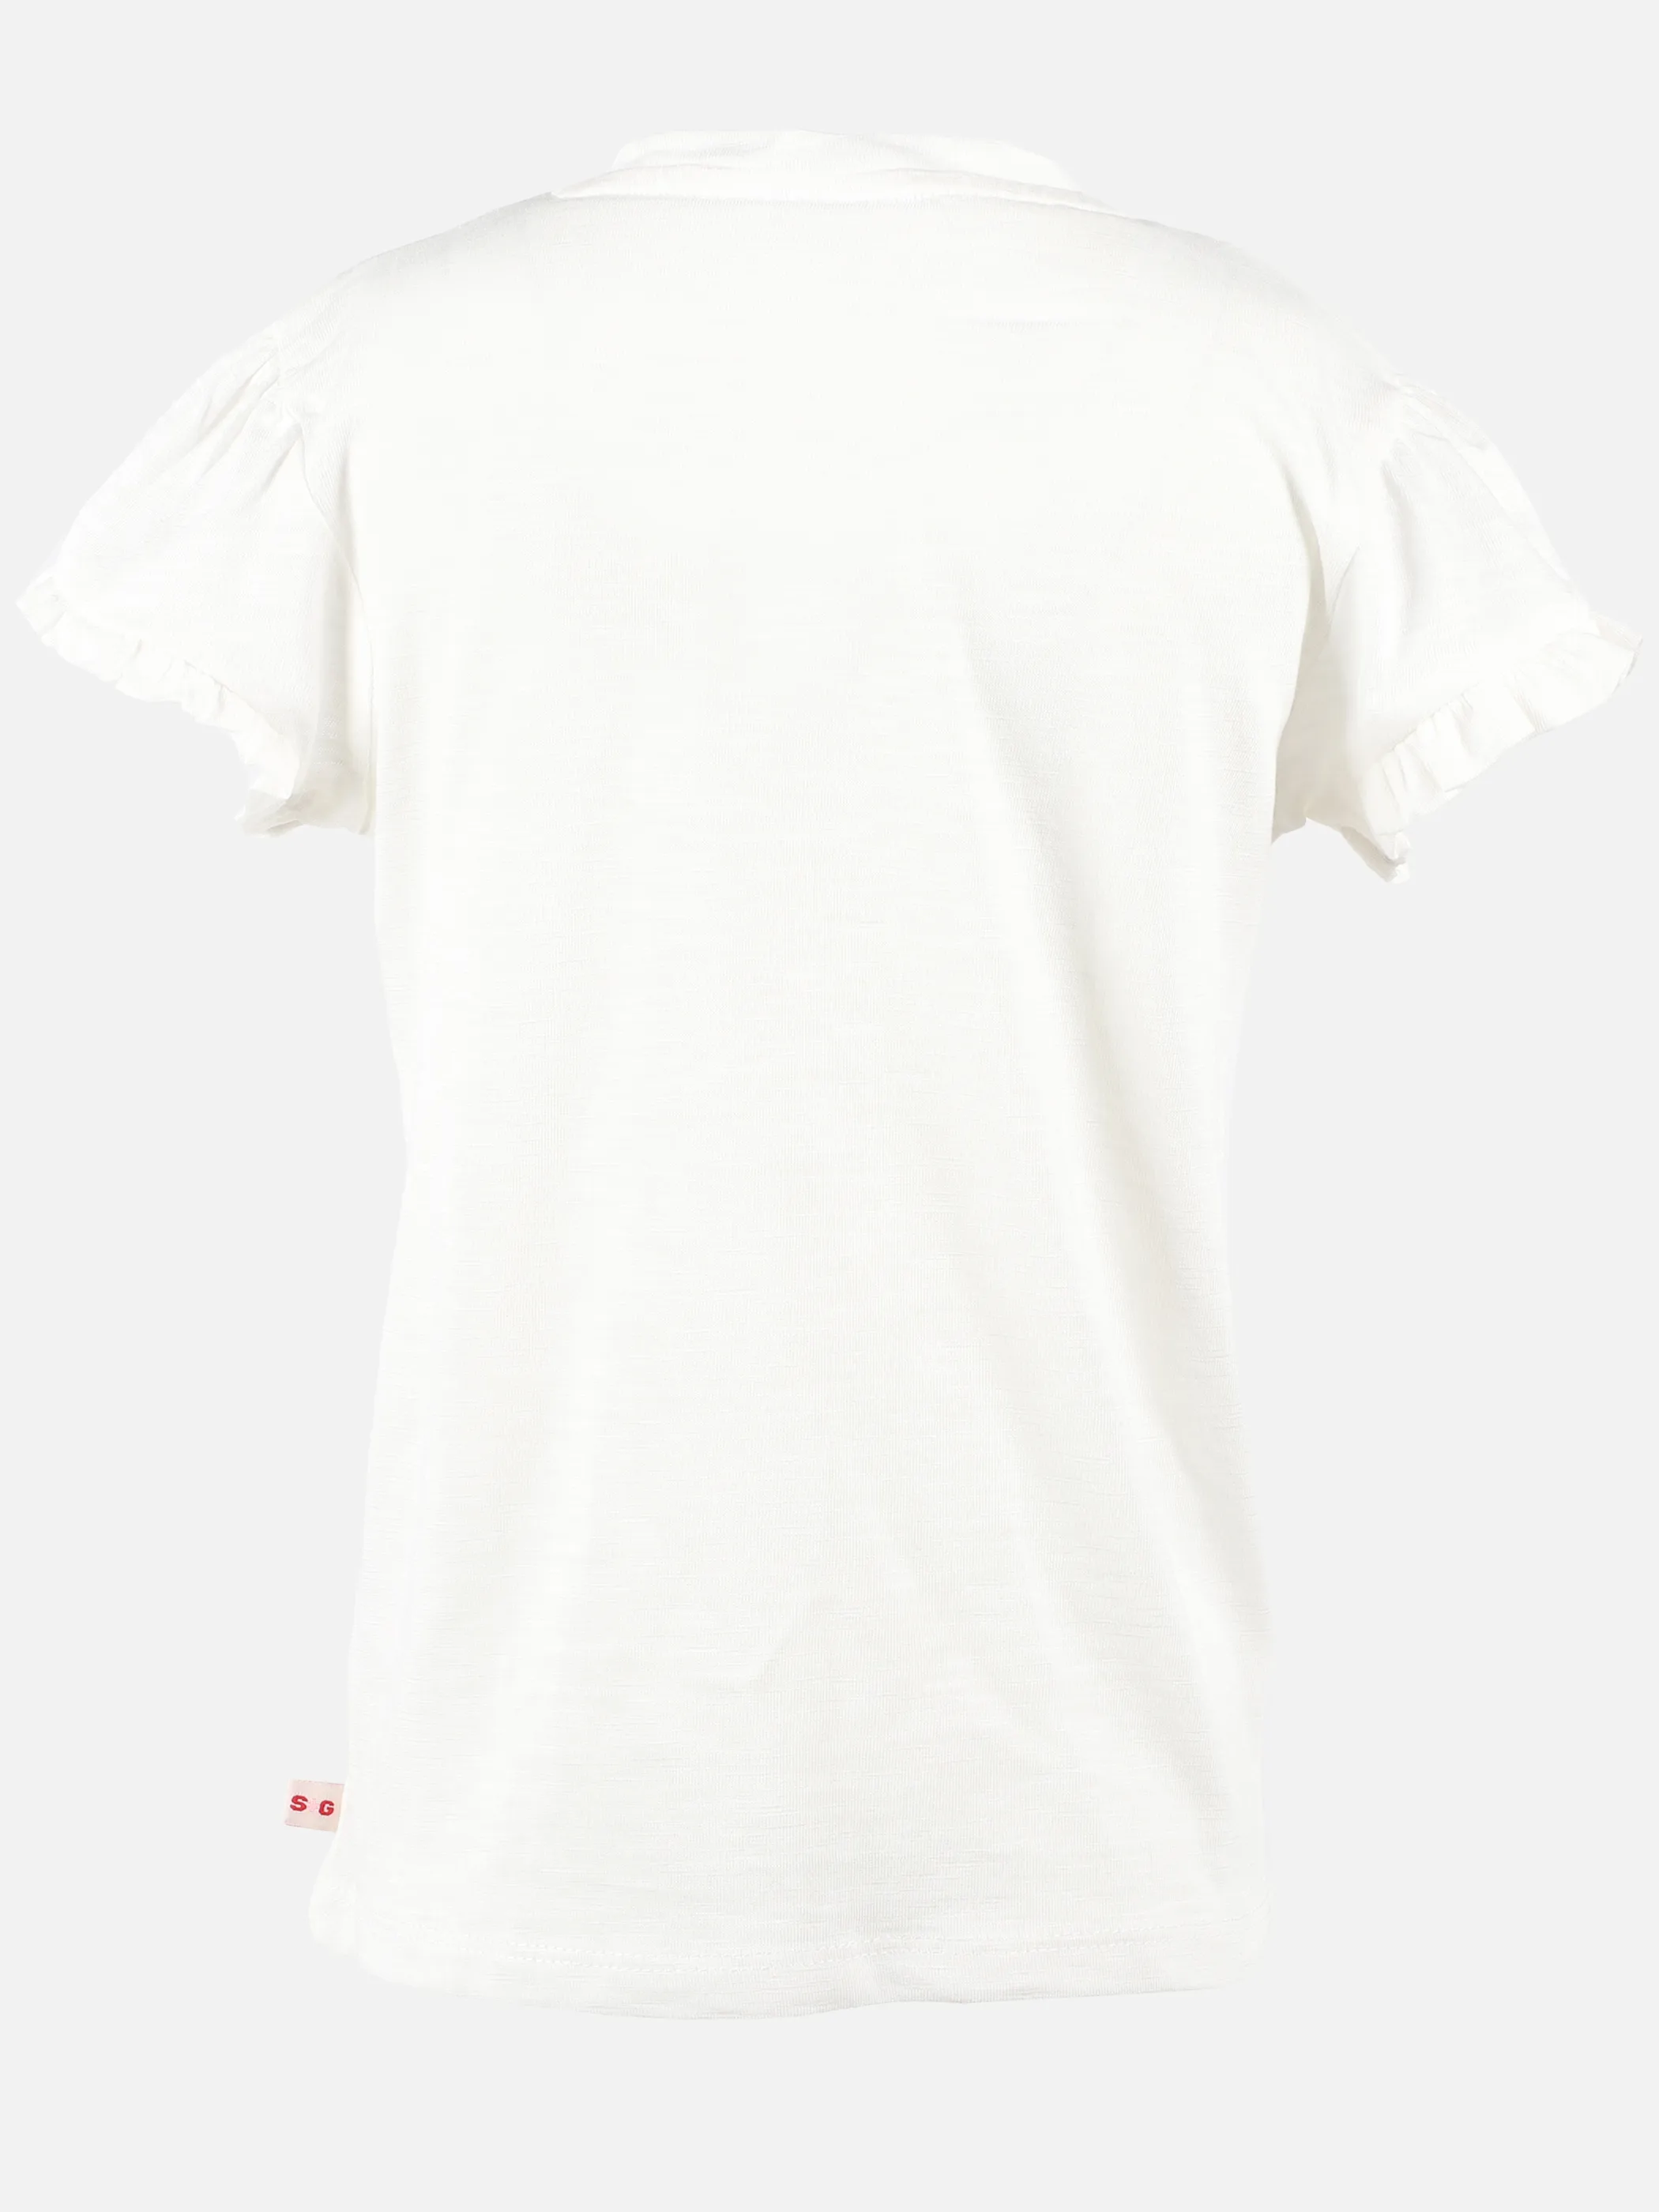 Stop + Go KM T-shirt mit Appl. + Tasche in grün und offwhite Weiß 891563 OFFWHITE 2